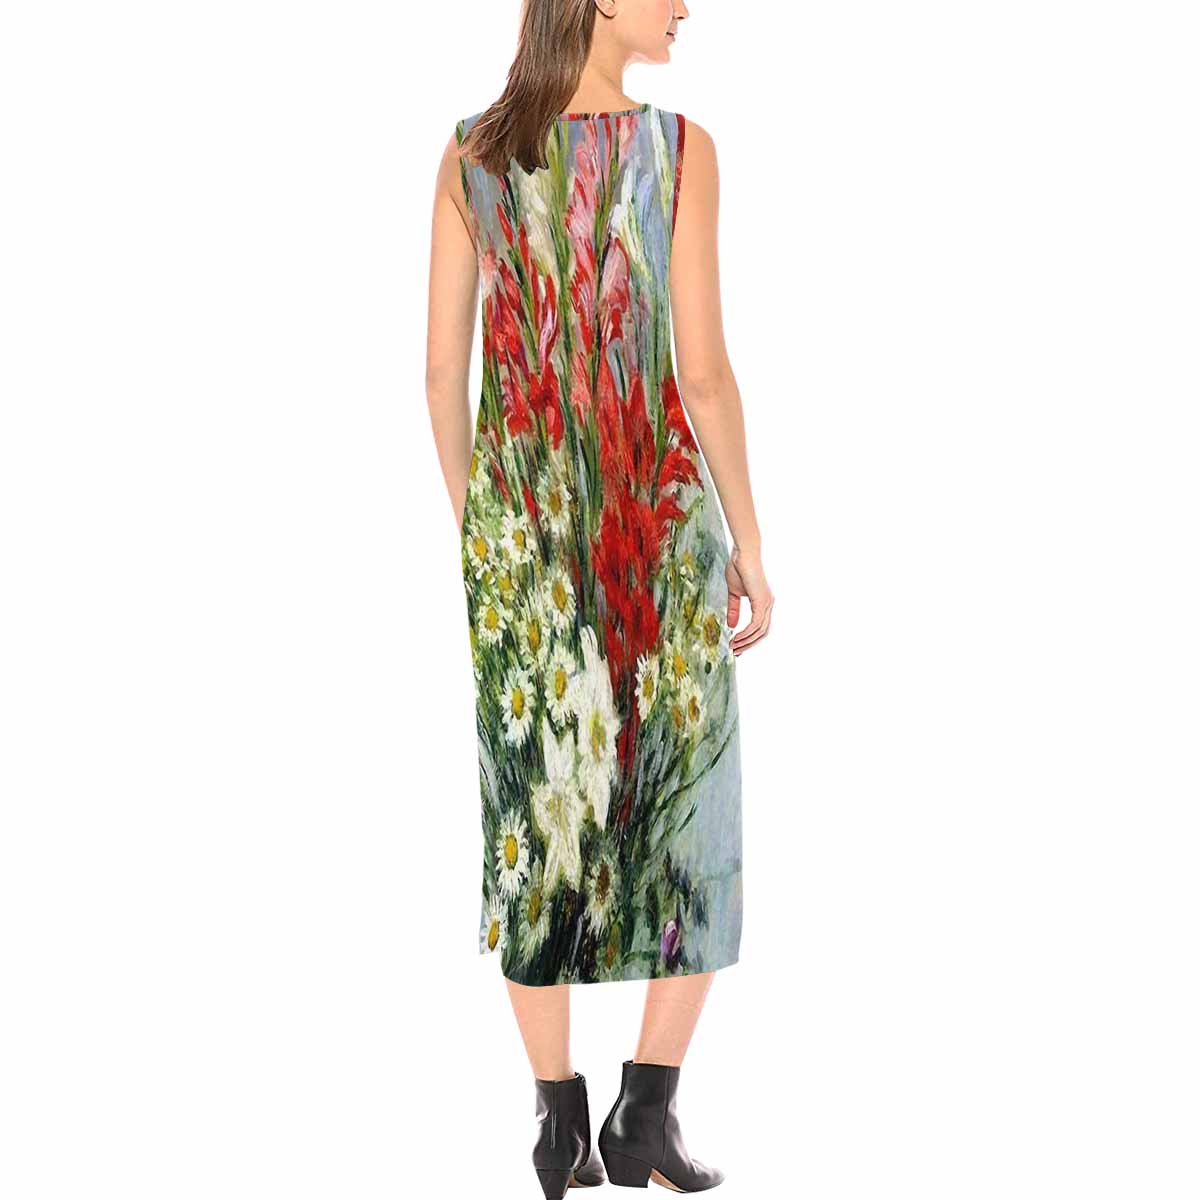 Vintage floral long dress, model D09538 Design 43